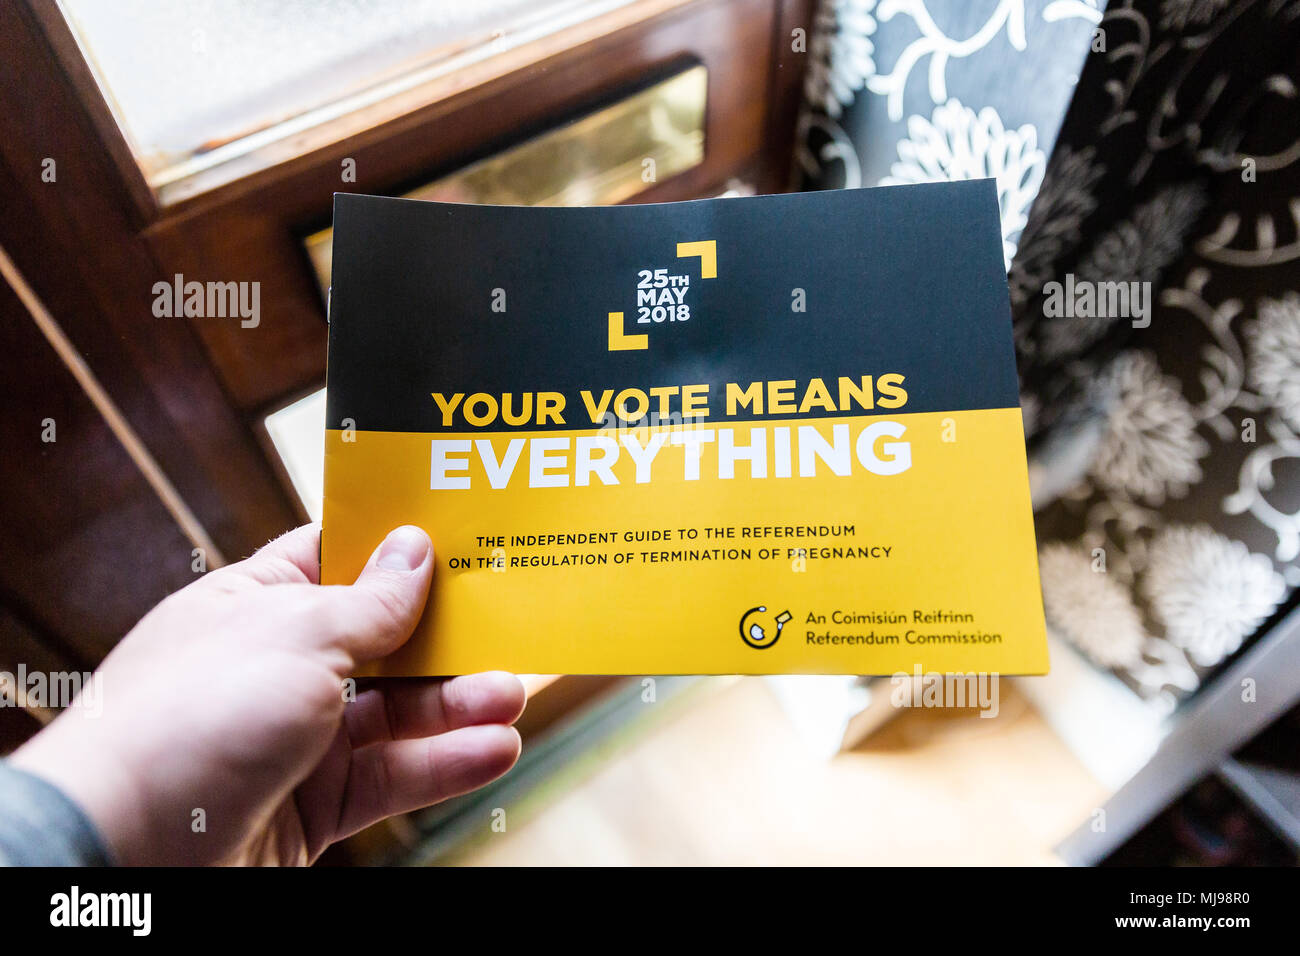 Livret de référendum doit être supprimé dans la boîte aux lettres par le biais d'encourager à voter dans la prochaine modification 8e référendum. Référendum en Irlande l'avortement Banque D'Images